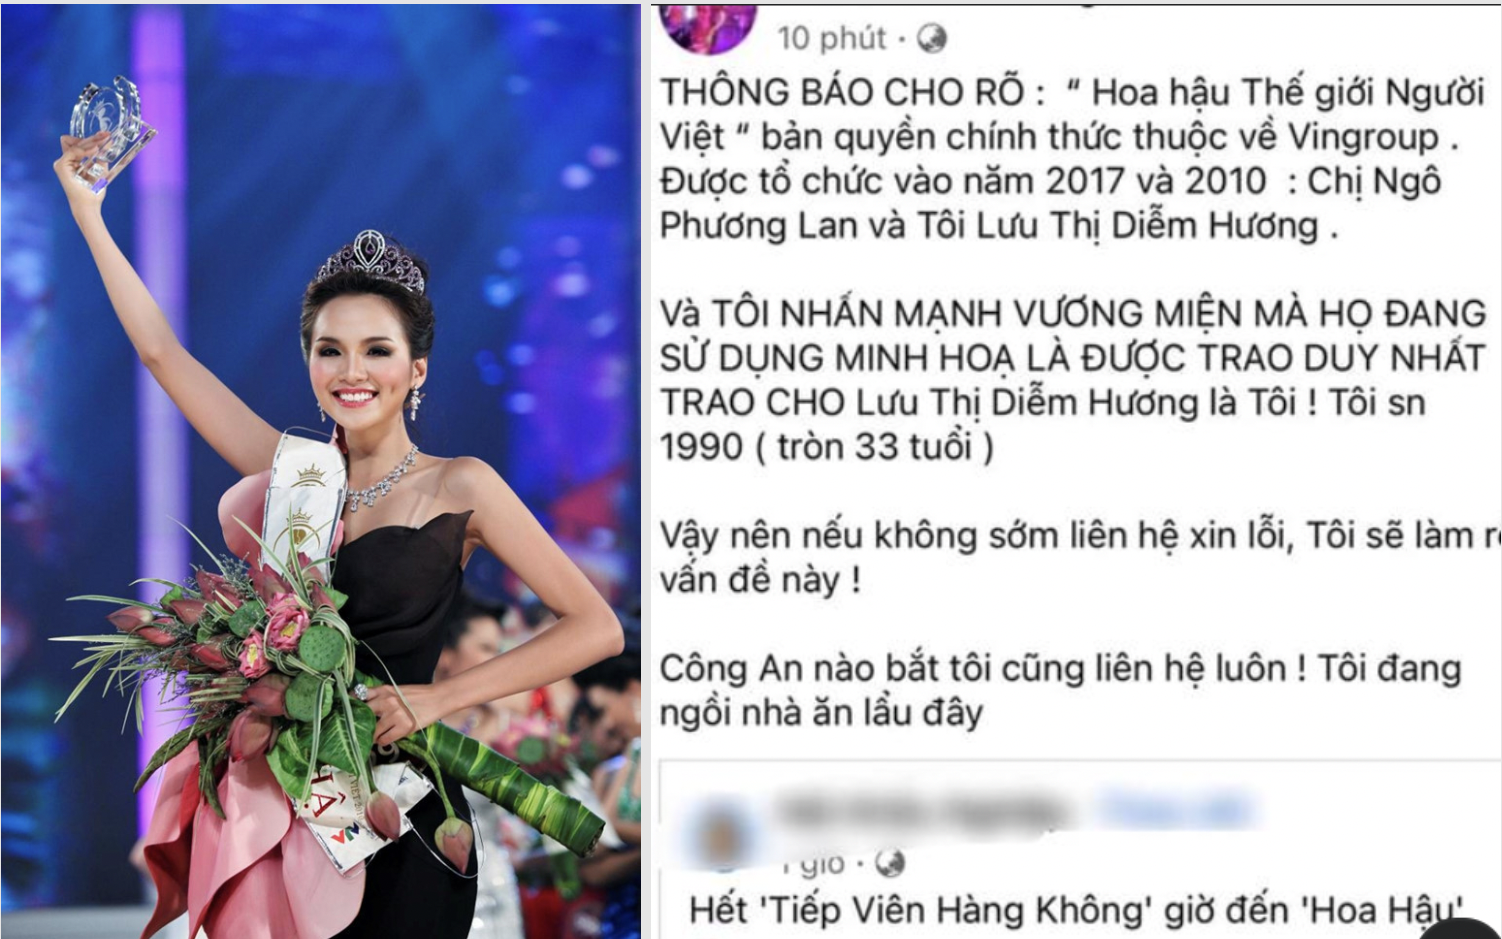 Diễm Hương đưa 2 chi tiết "đắt giá" khi bị "réo" tên trong tin đồn "Hoa hậu bán dâm 200 triệu"